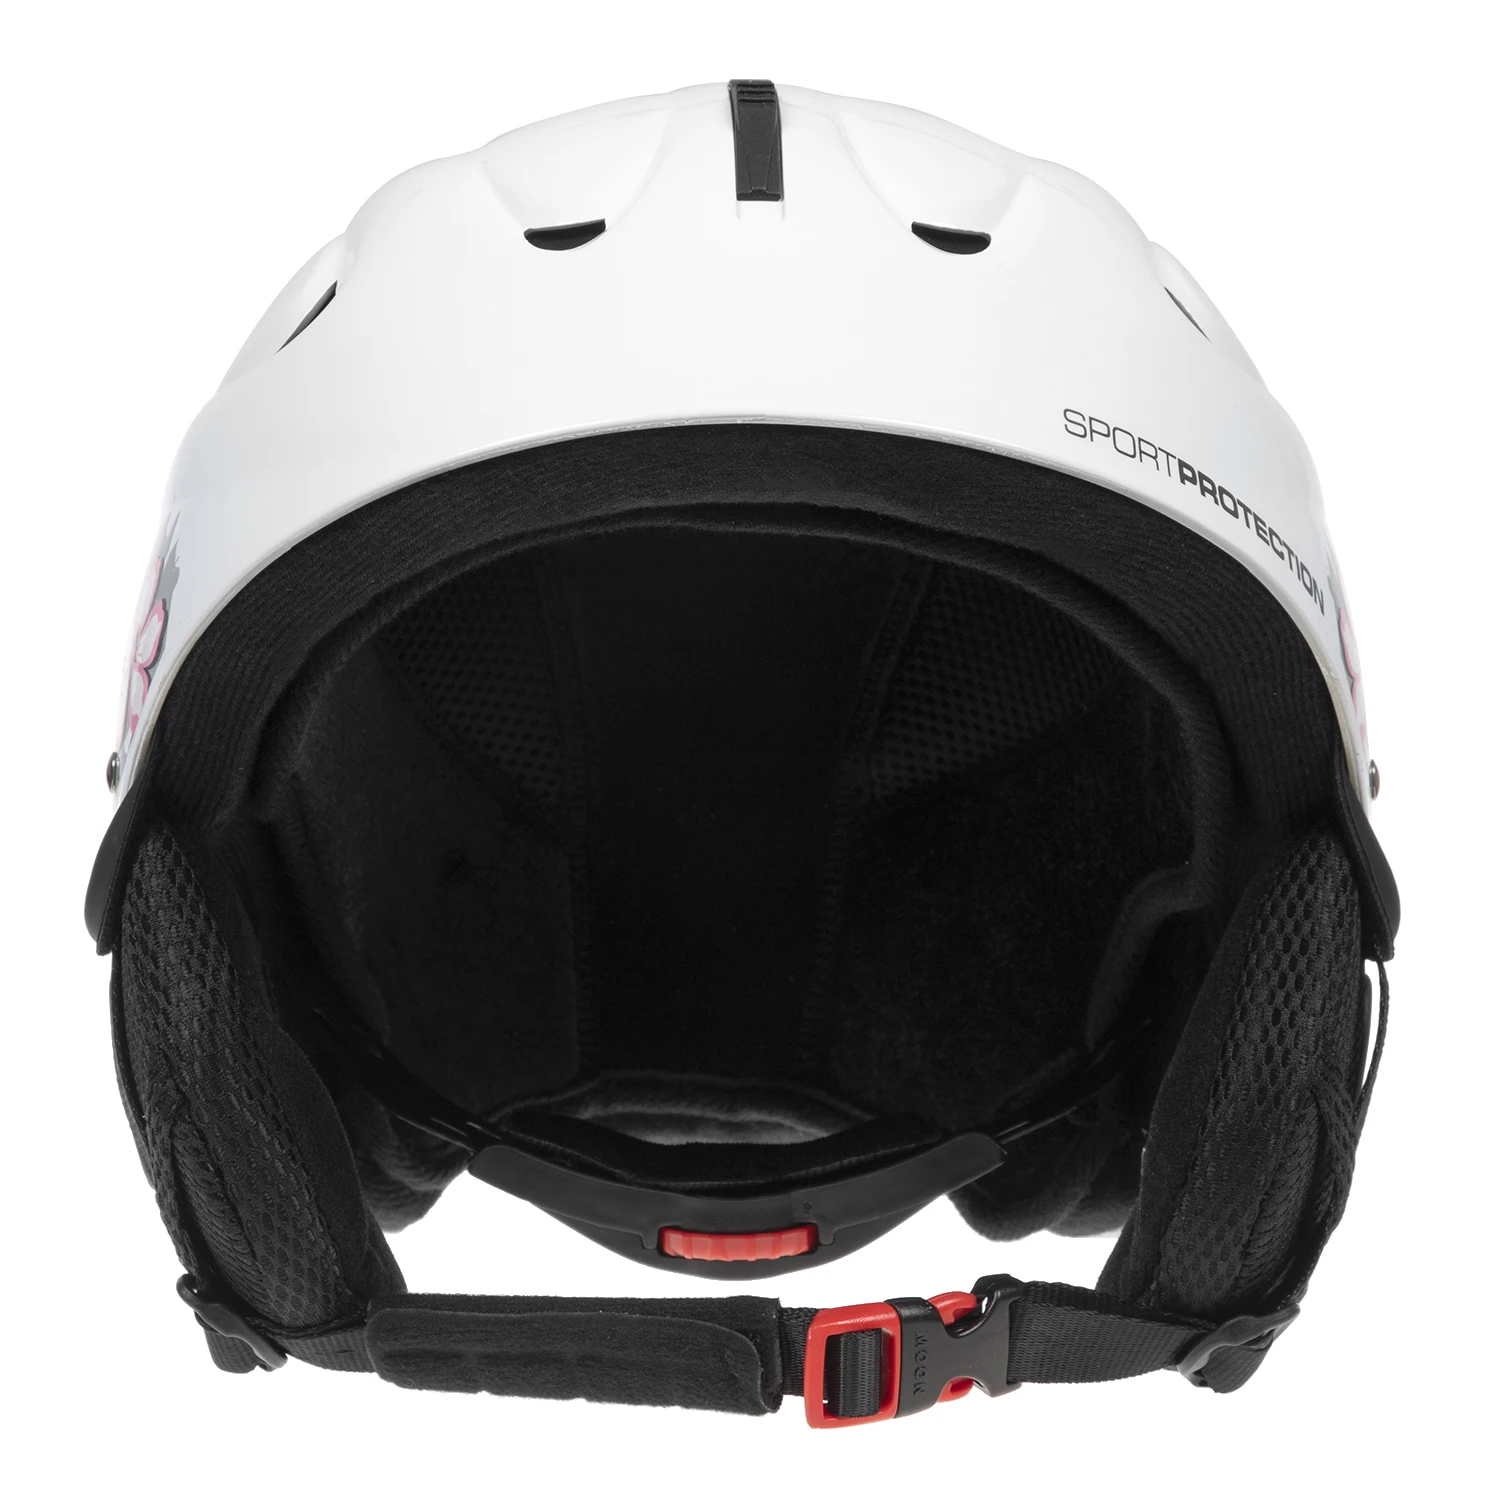 Полупокрытый лыжный шлем сноуборд шлем с наушниками для женщин и мужчин защитный лыжный шлем профессиональный лыжный Снежный спортивный